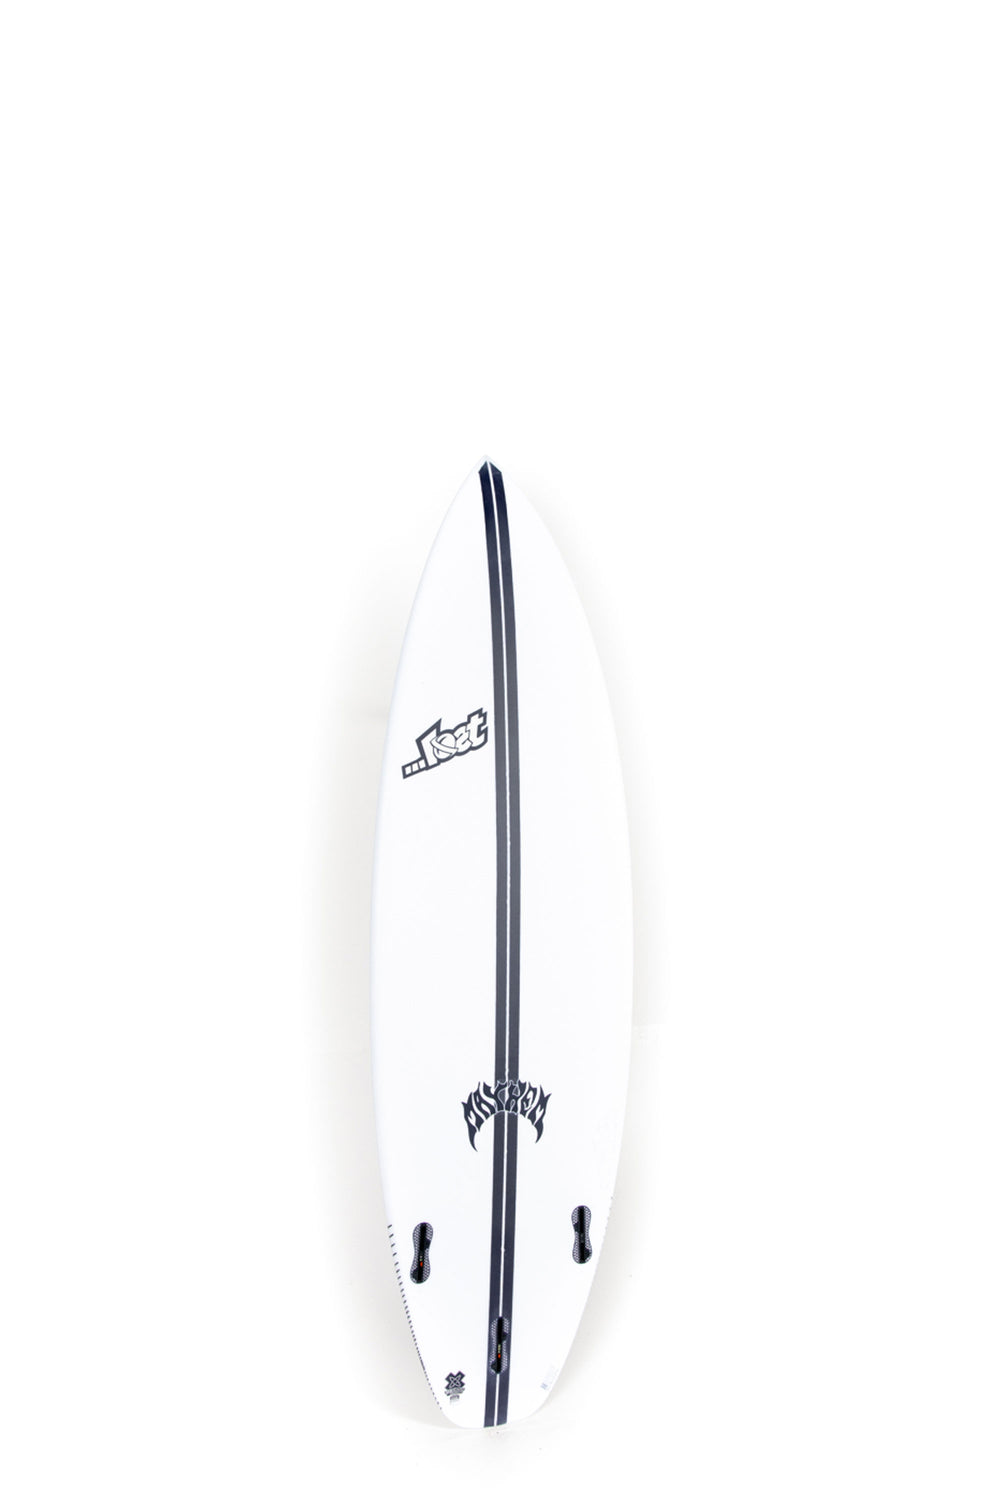 Lost Surfboard - SUB DRIVER 2.0 by Matt Biolos - Light Speed - 5